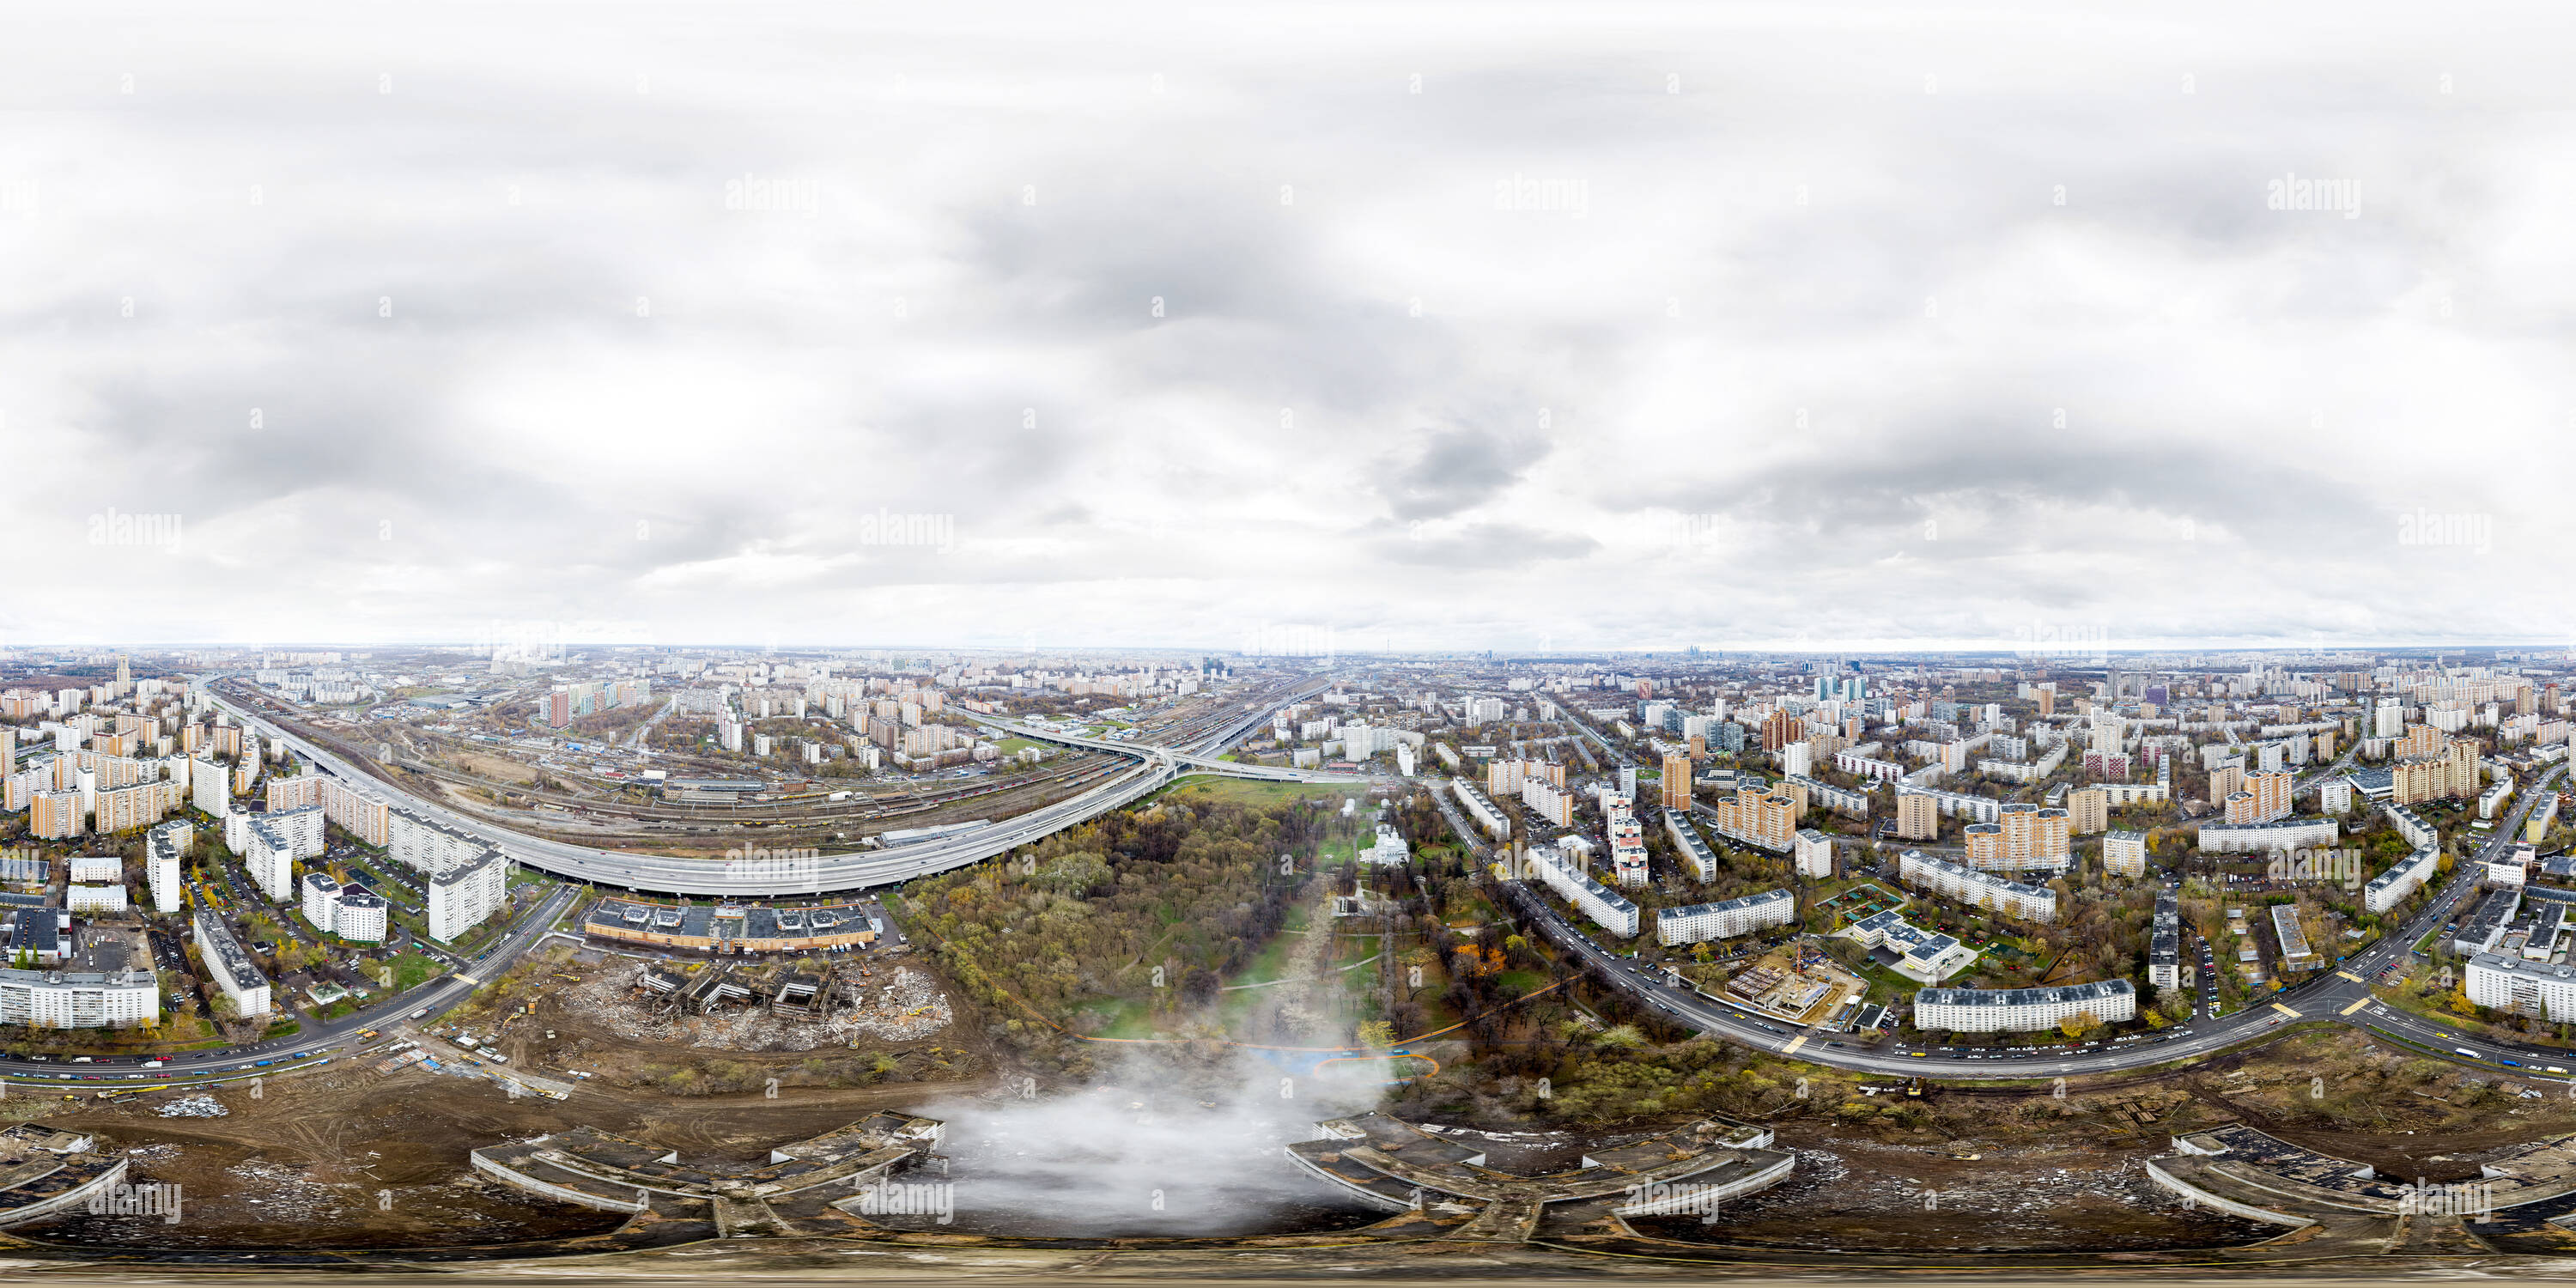 Visualizzazione panoramica a 360 gradi di Khovrino clinica. Distruzione